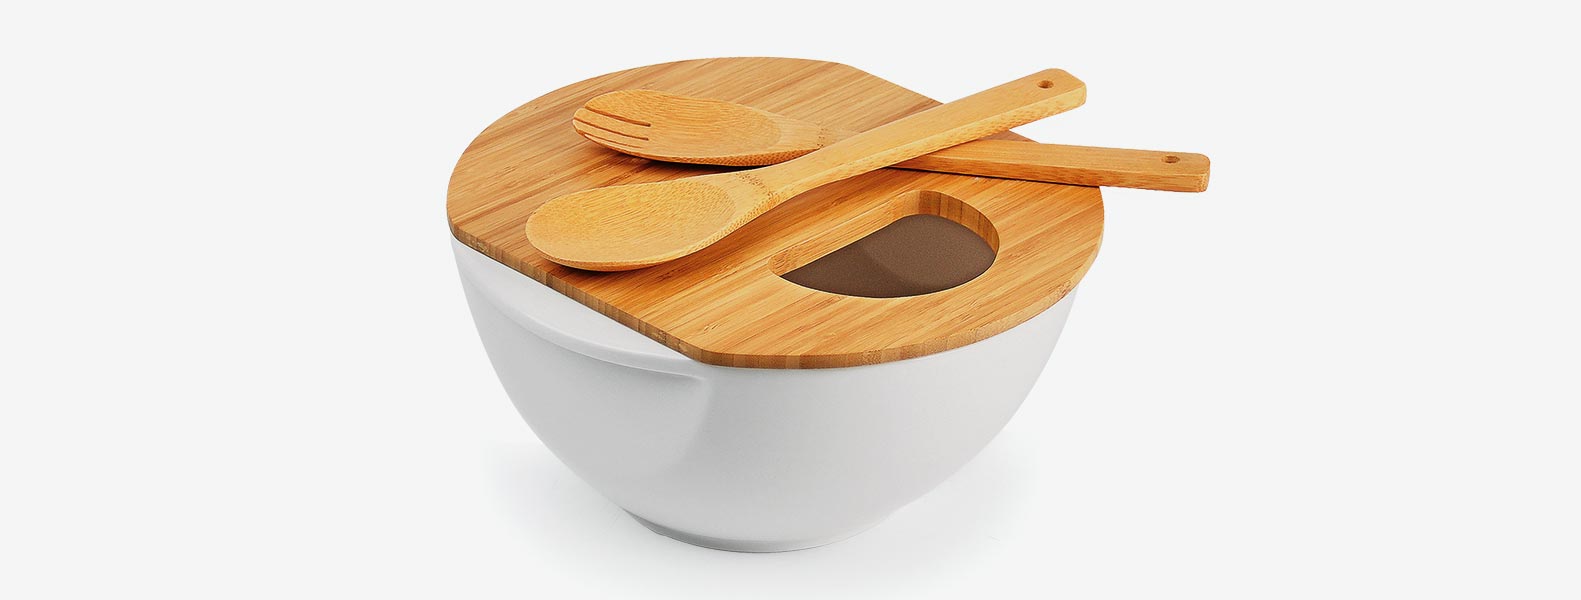 Conjunto para Servir em Porcelana/Bambu. Acompanha tigela em Porcelana com tampa e utensílios em Bambu. Capacidade: 3L